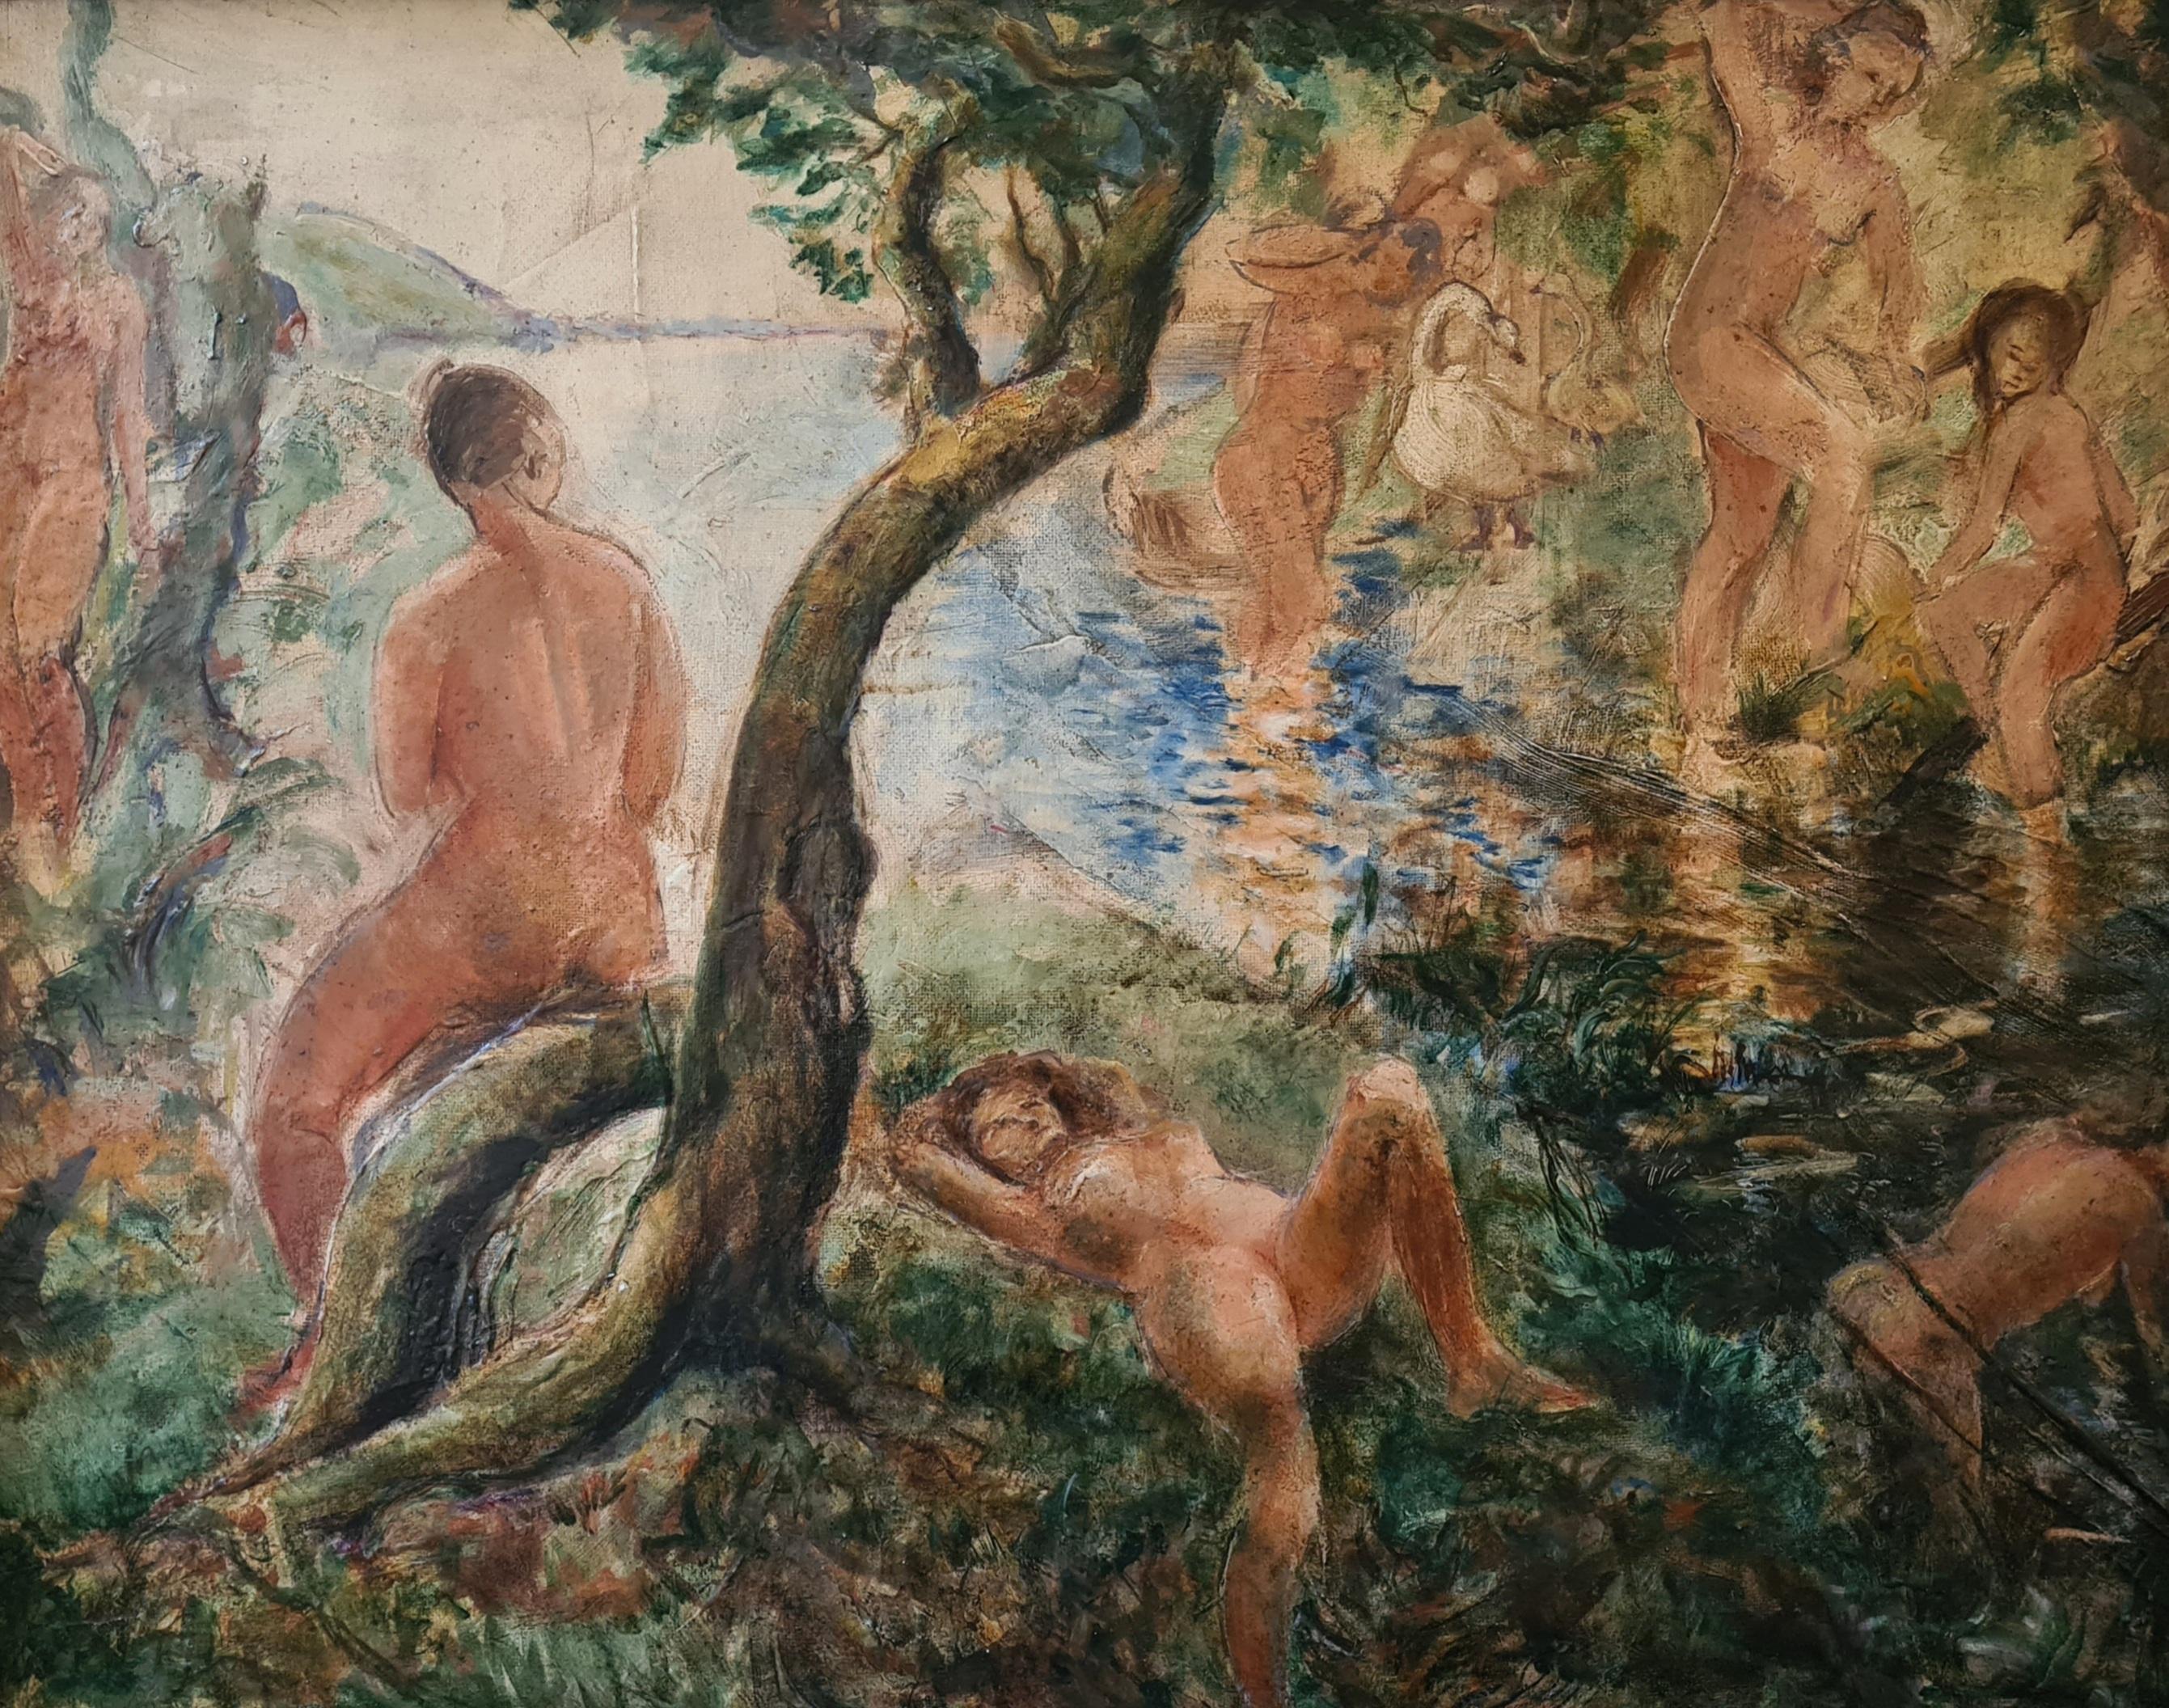 Impressionist Large Scale Female Nudes in a Landscape, 'L' été a la rivière' - Painting by Unknown